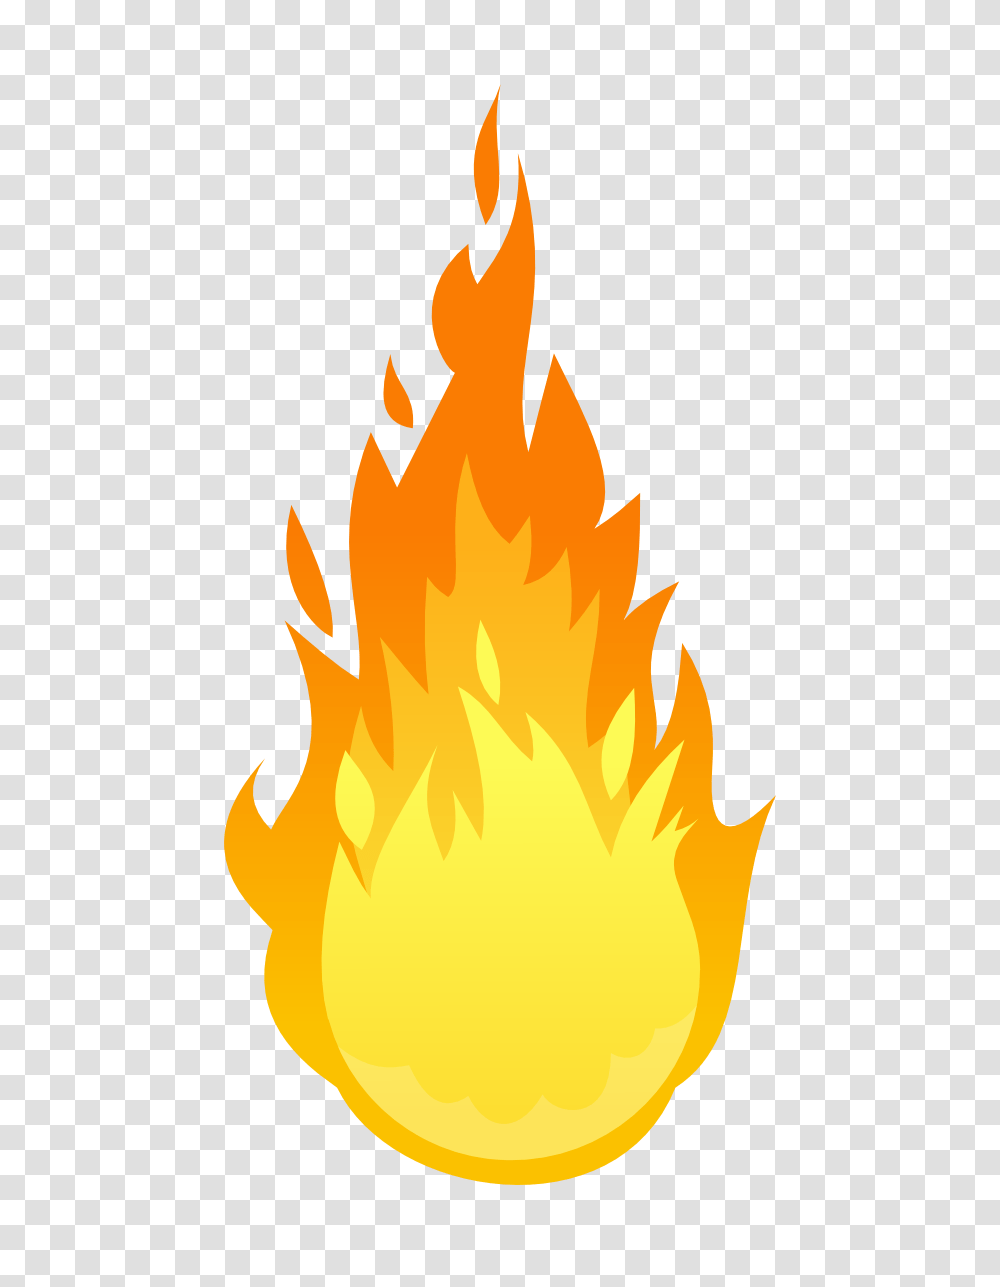 Image, Fire, Flame, Bonfire Transparent Png